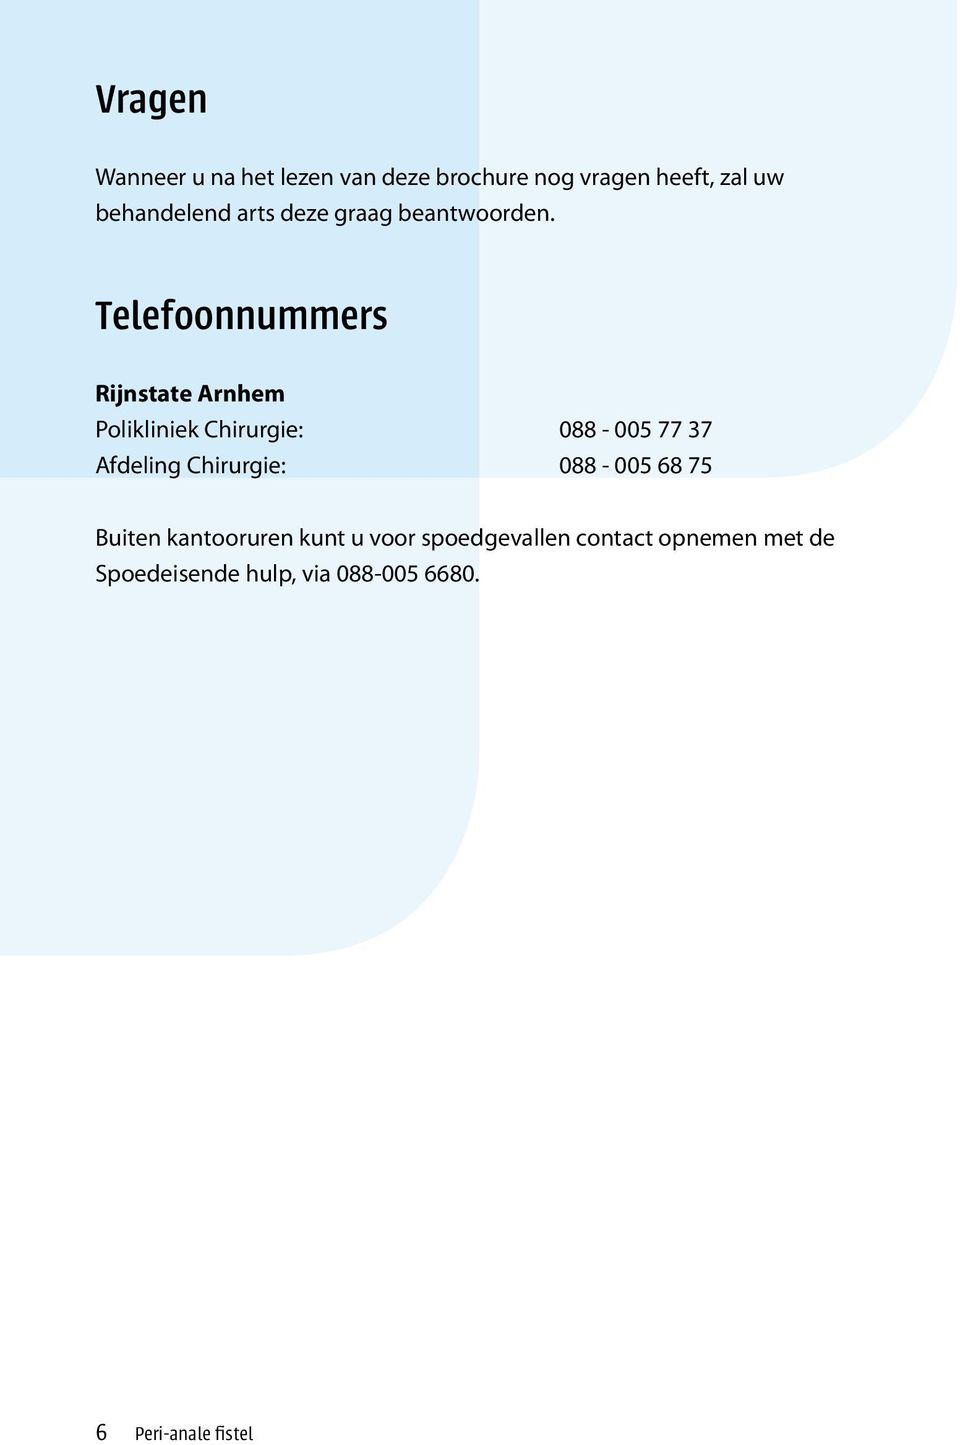 Telefoonnummers Rijnstate Arnhem Polikliniek Chirurgie: 088-005 77 37 Afdeling